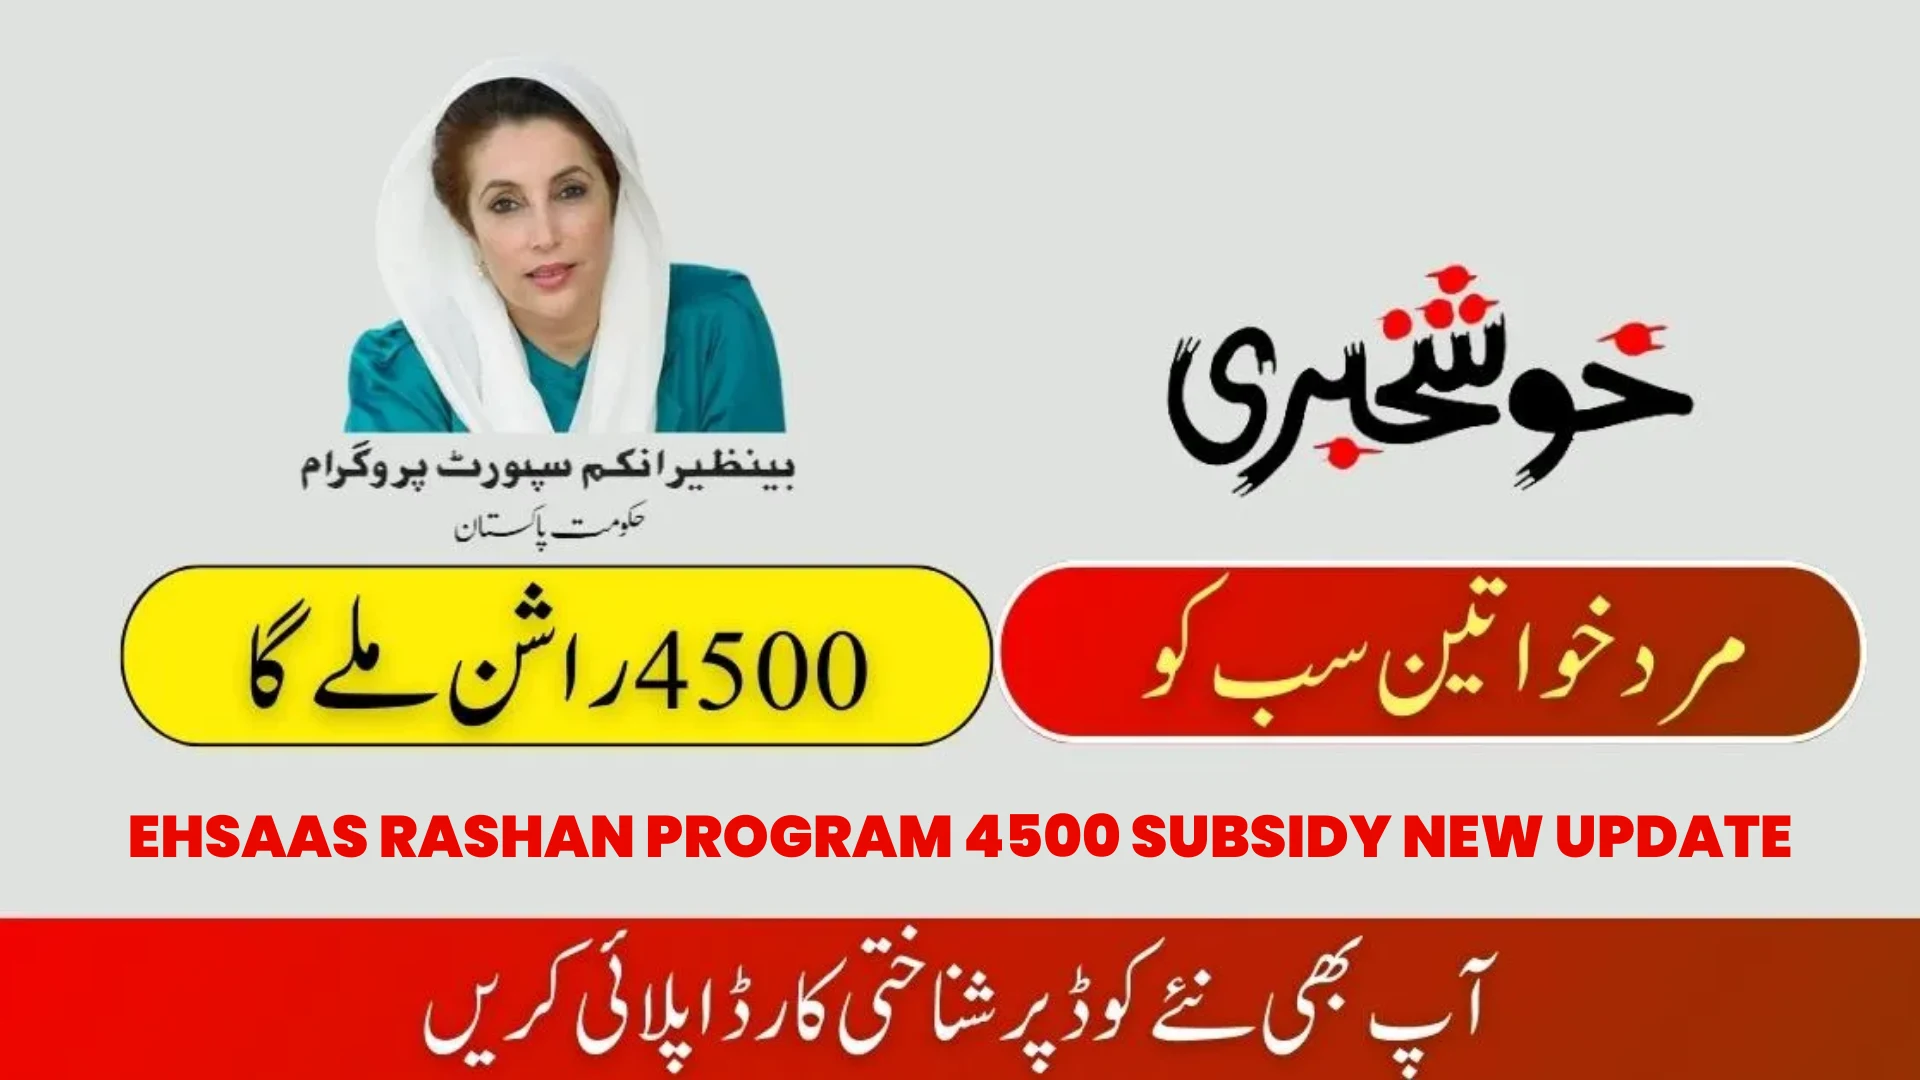 Ehsaas Rashan Program 4500 Subsidy New Update